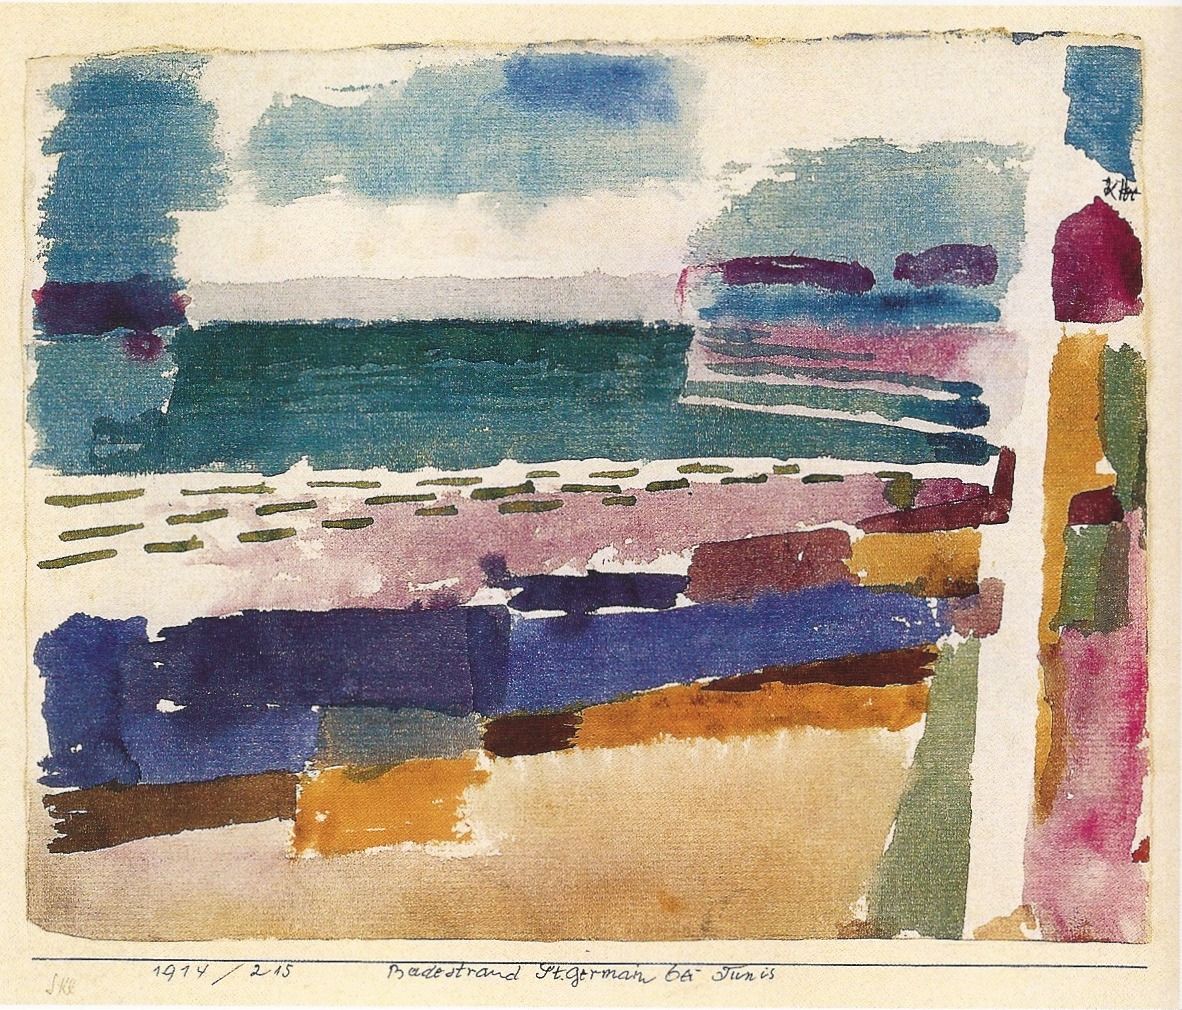 La plage di St. Germaine. Paul Klee